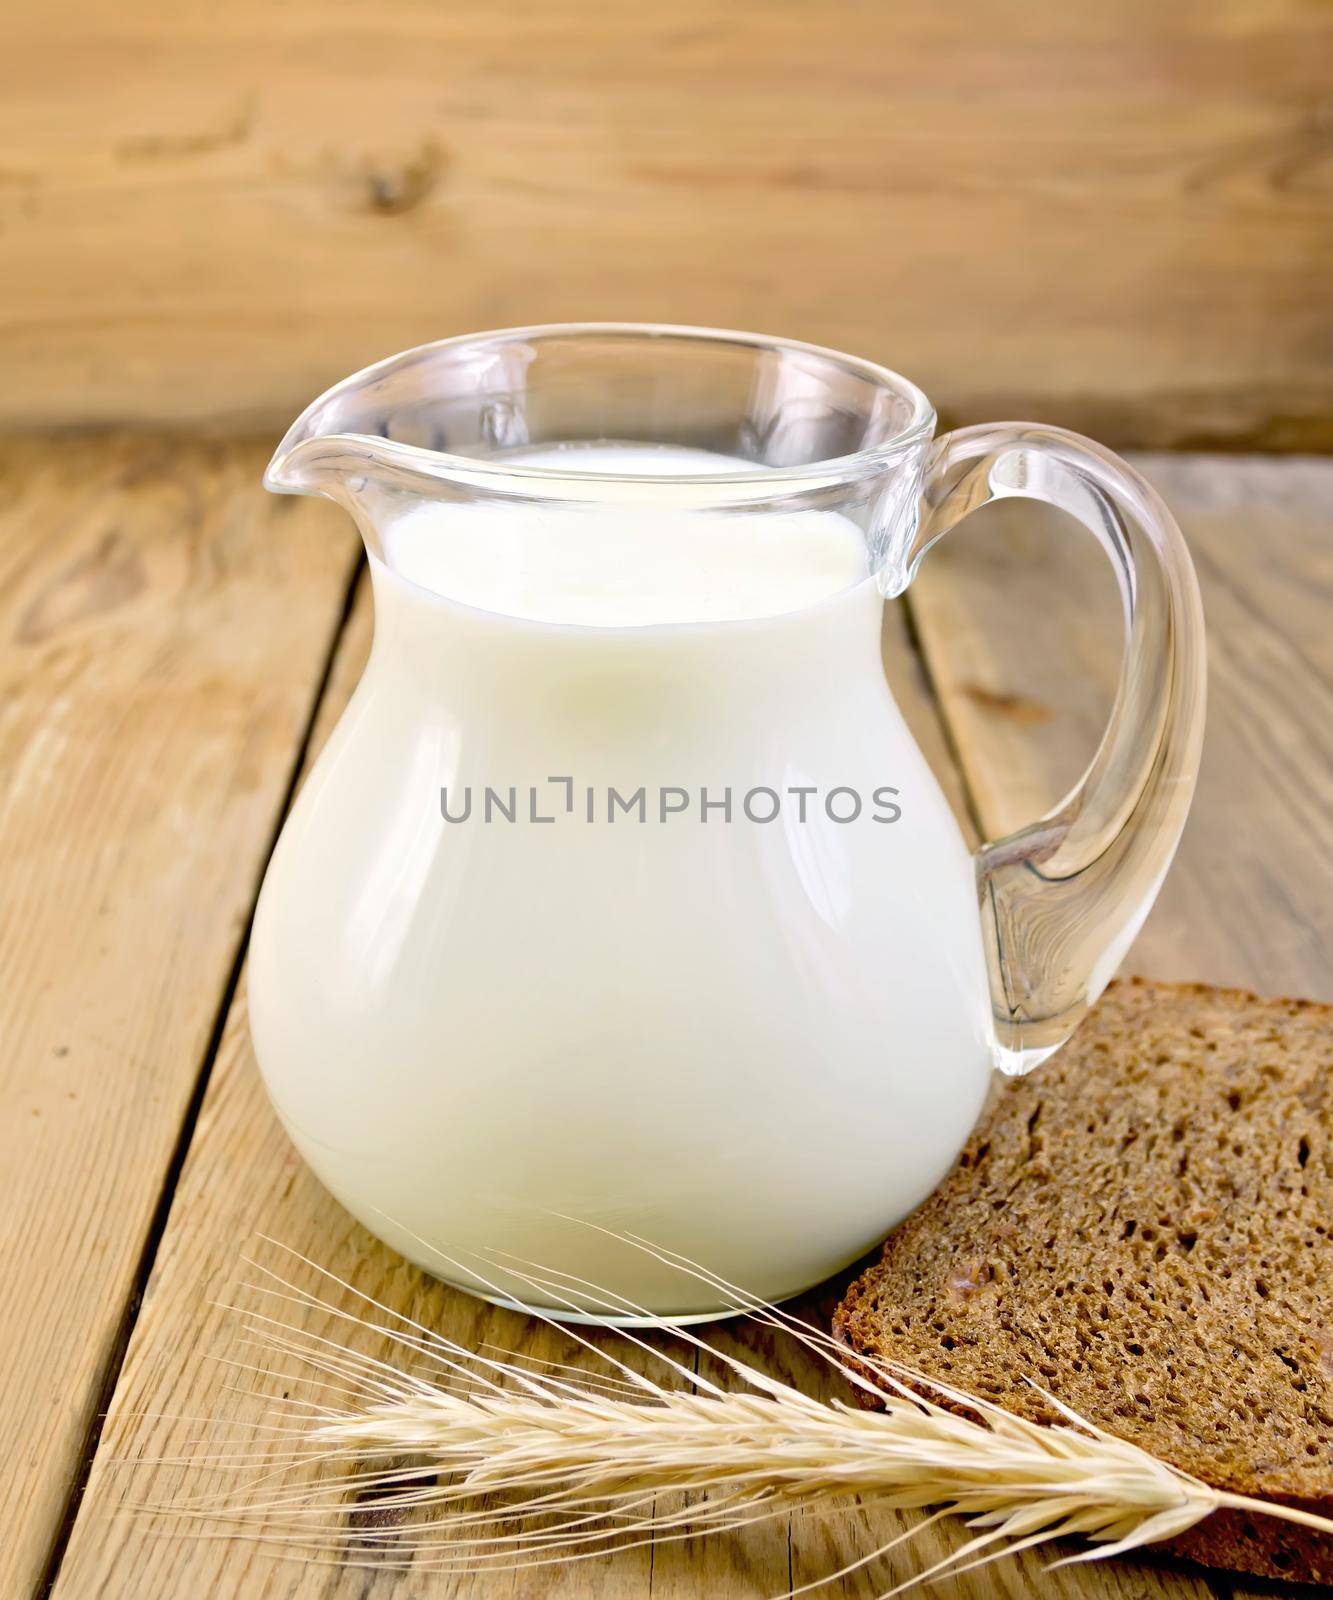 Milk in glass jug with bread on board by rezkrr